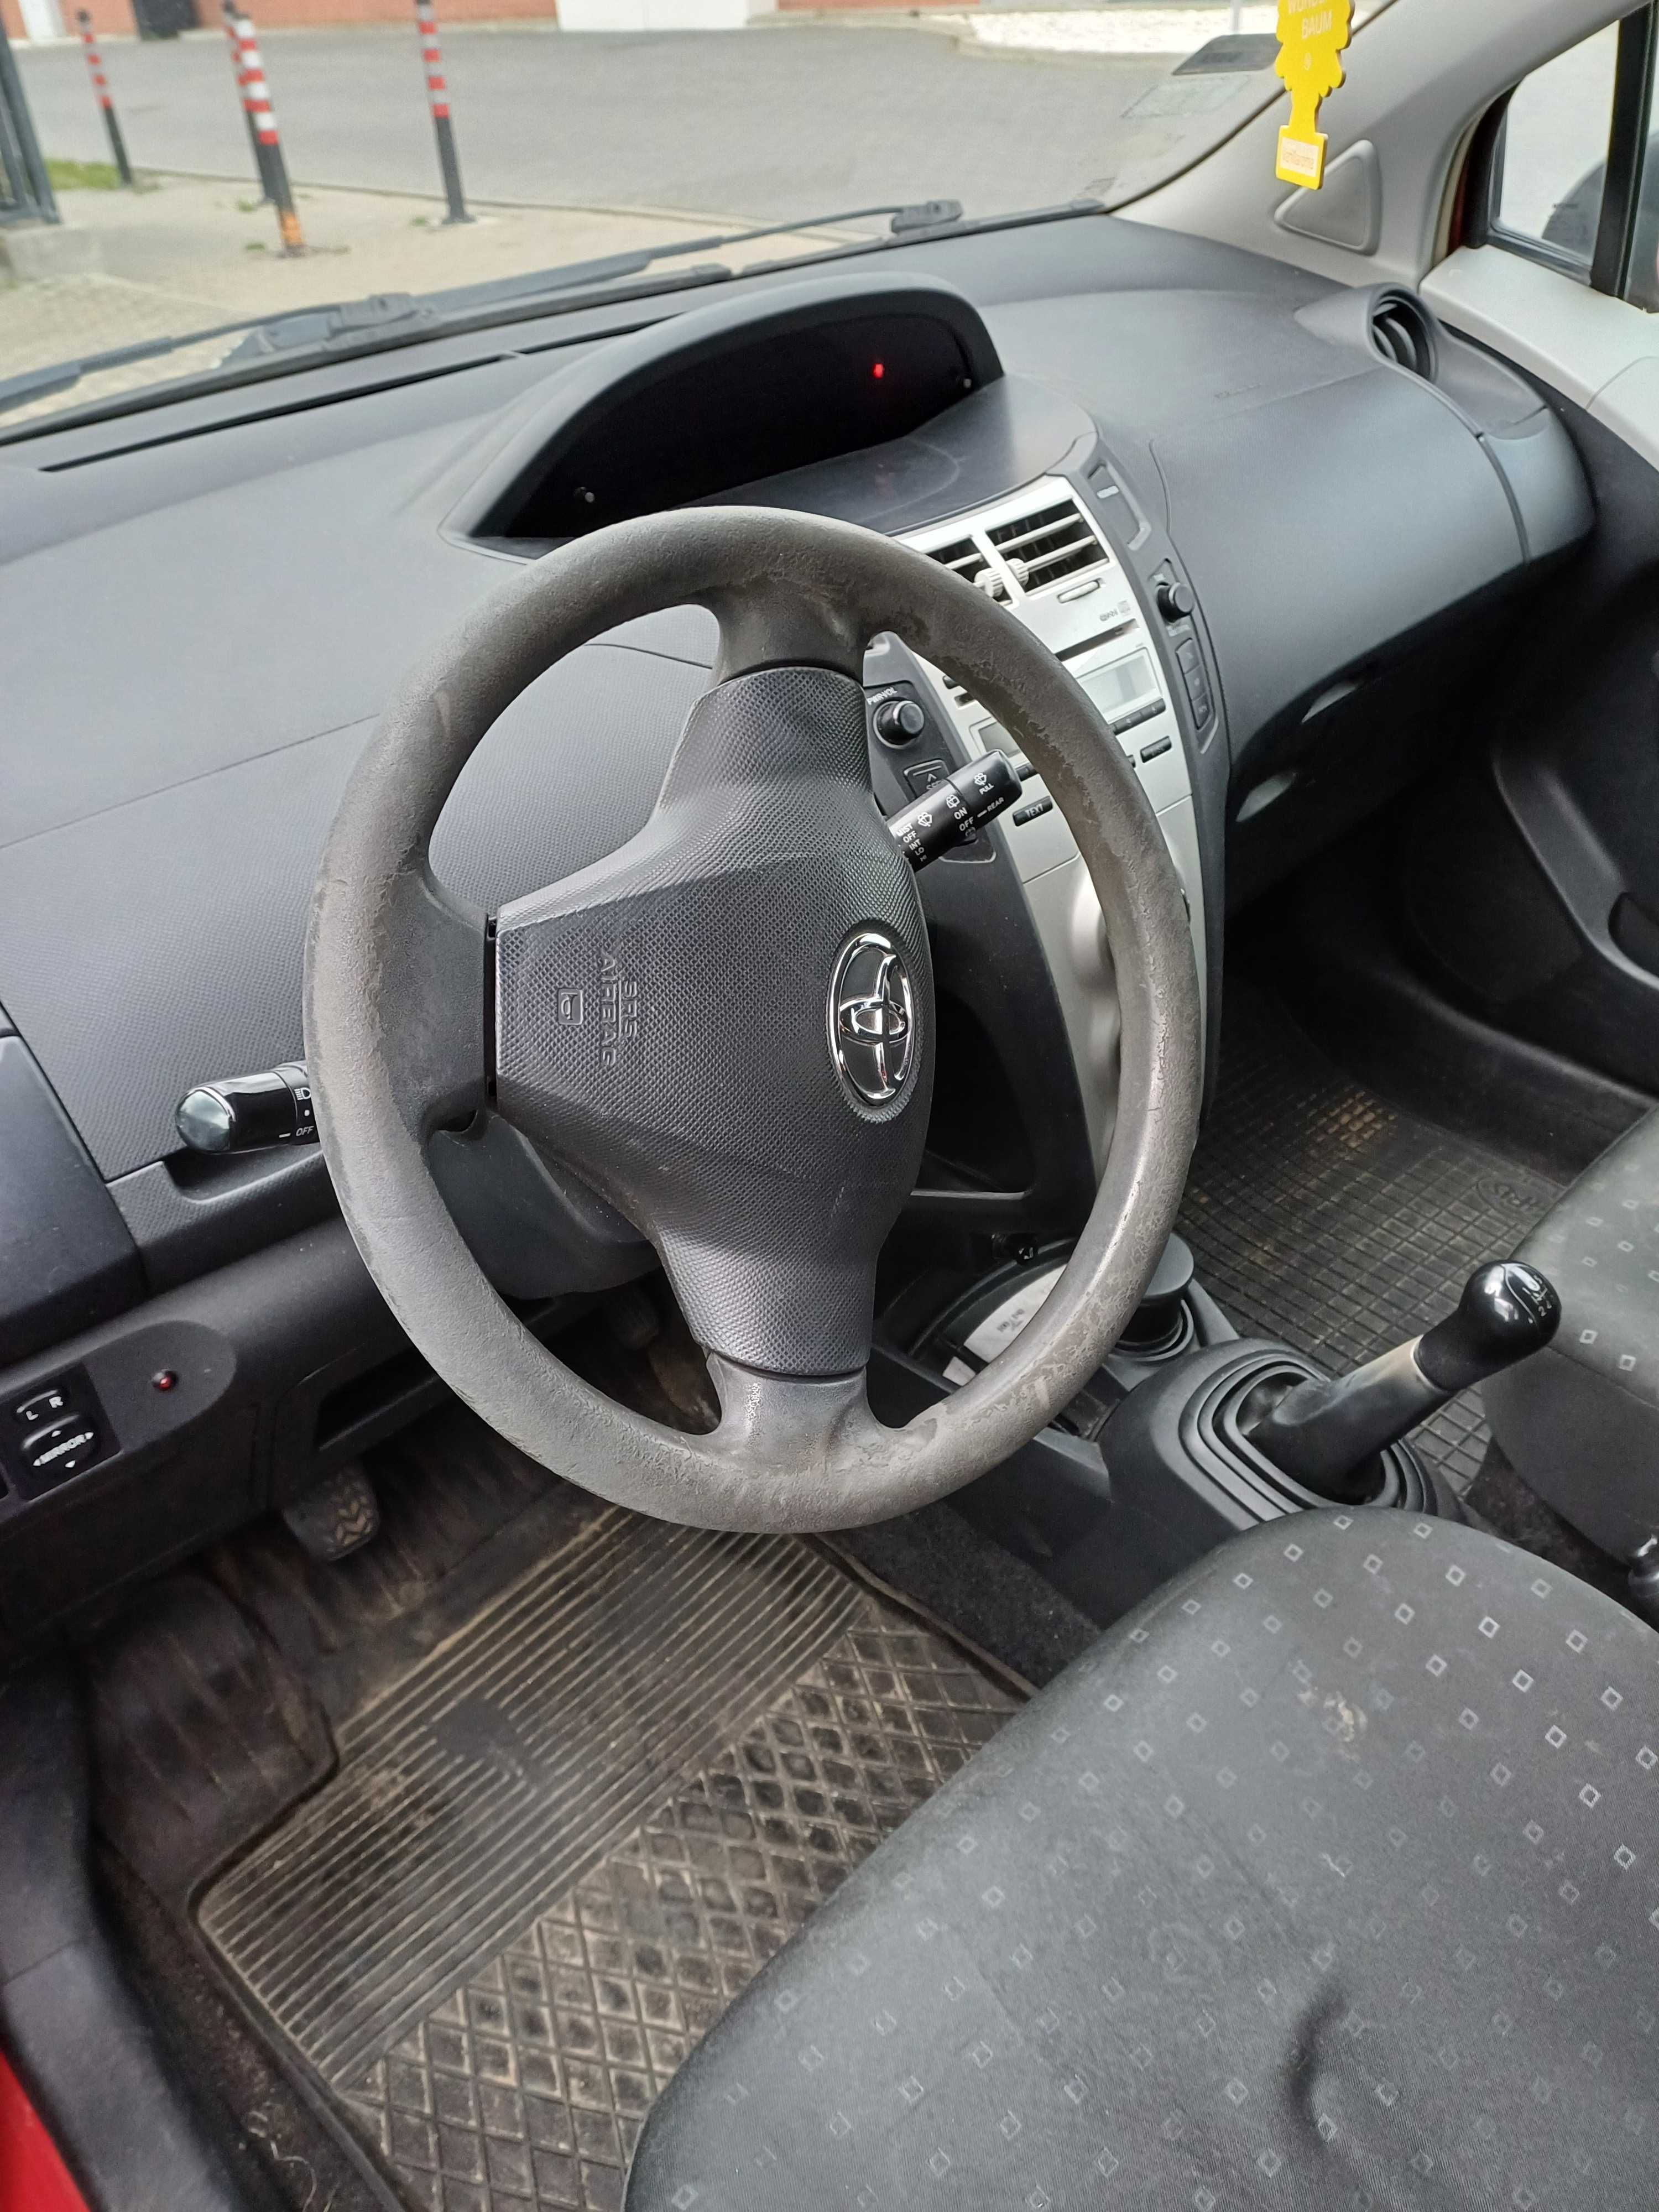 Toyota Yaris 1,4 Diesel, klimatyzacja